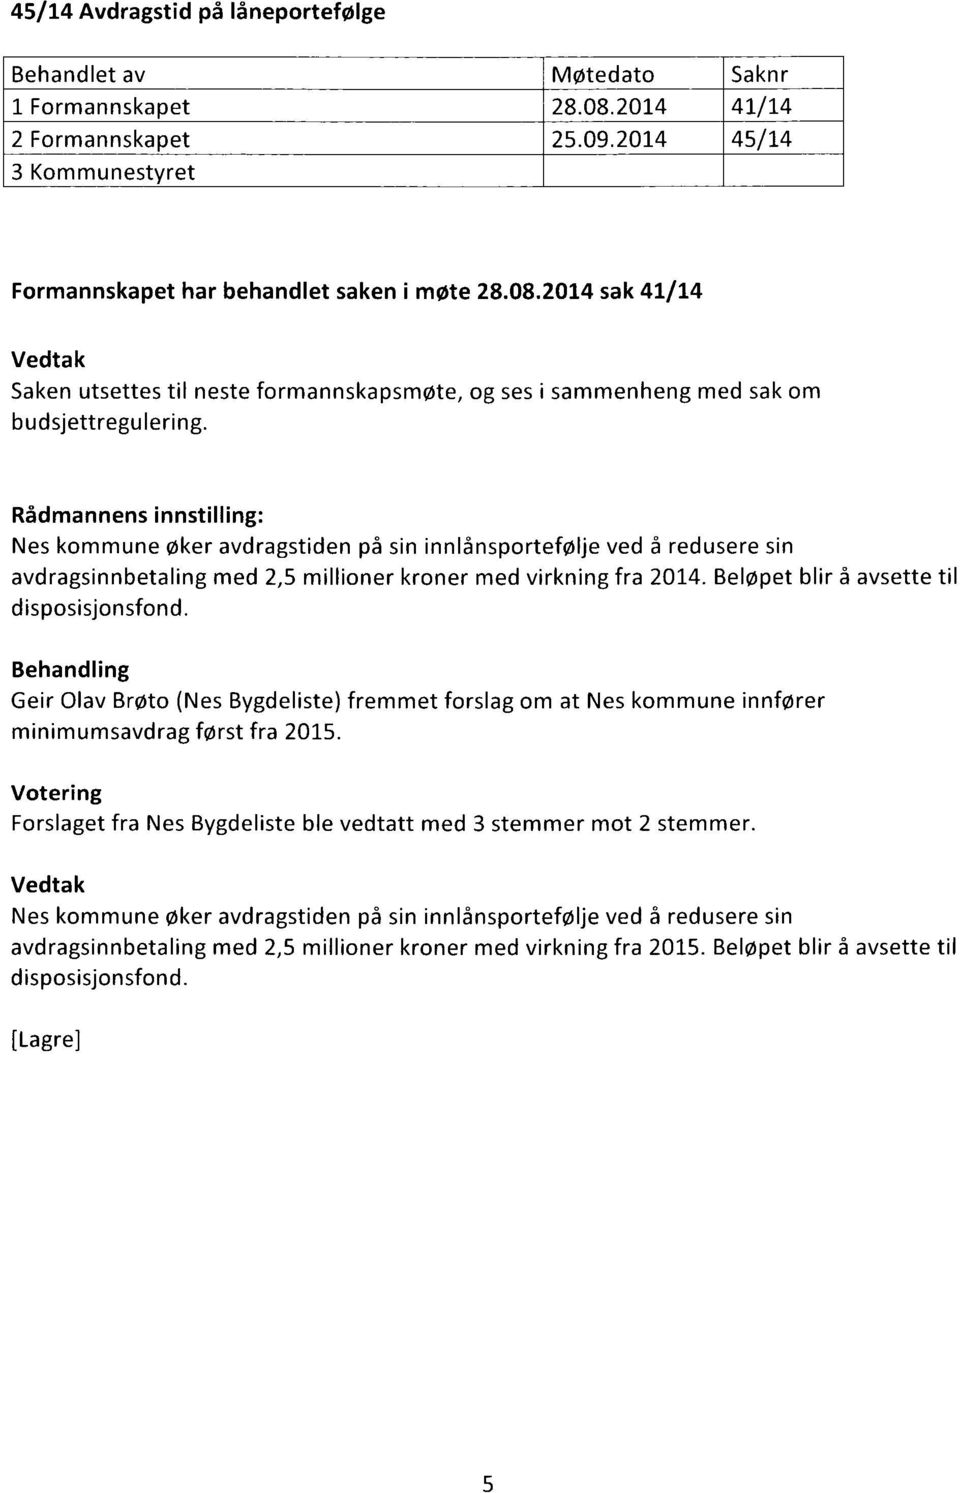 Geir Olav Brøto (Nes Bygdeliste) fremmet forslag om at Nes kommune innfører minimumsavdrag først fra 2015. Forslaget fra Nes Bygdeliste ble vedtatt med 3 stemmer mot 2 stemmer.